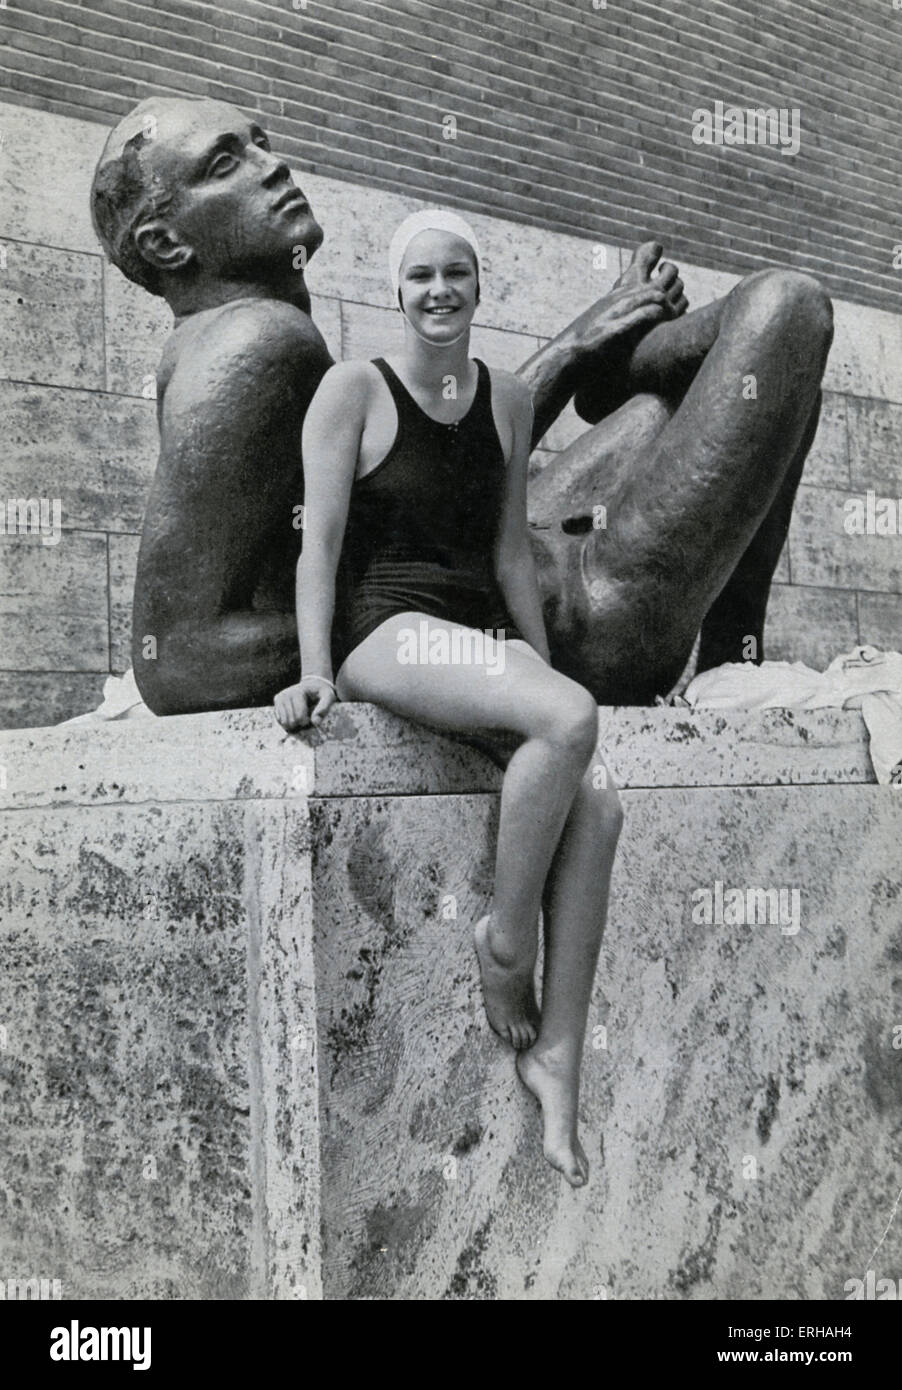 Jeannette Campbell (1916-2003), aux Jeux Olympiques de Berlin en 1936. Campbell, une Argentine, remporte l'argent au 100 mètres nage libre, Banque D'Images